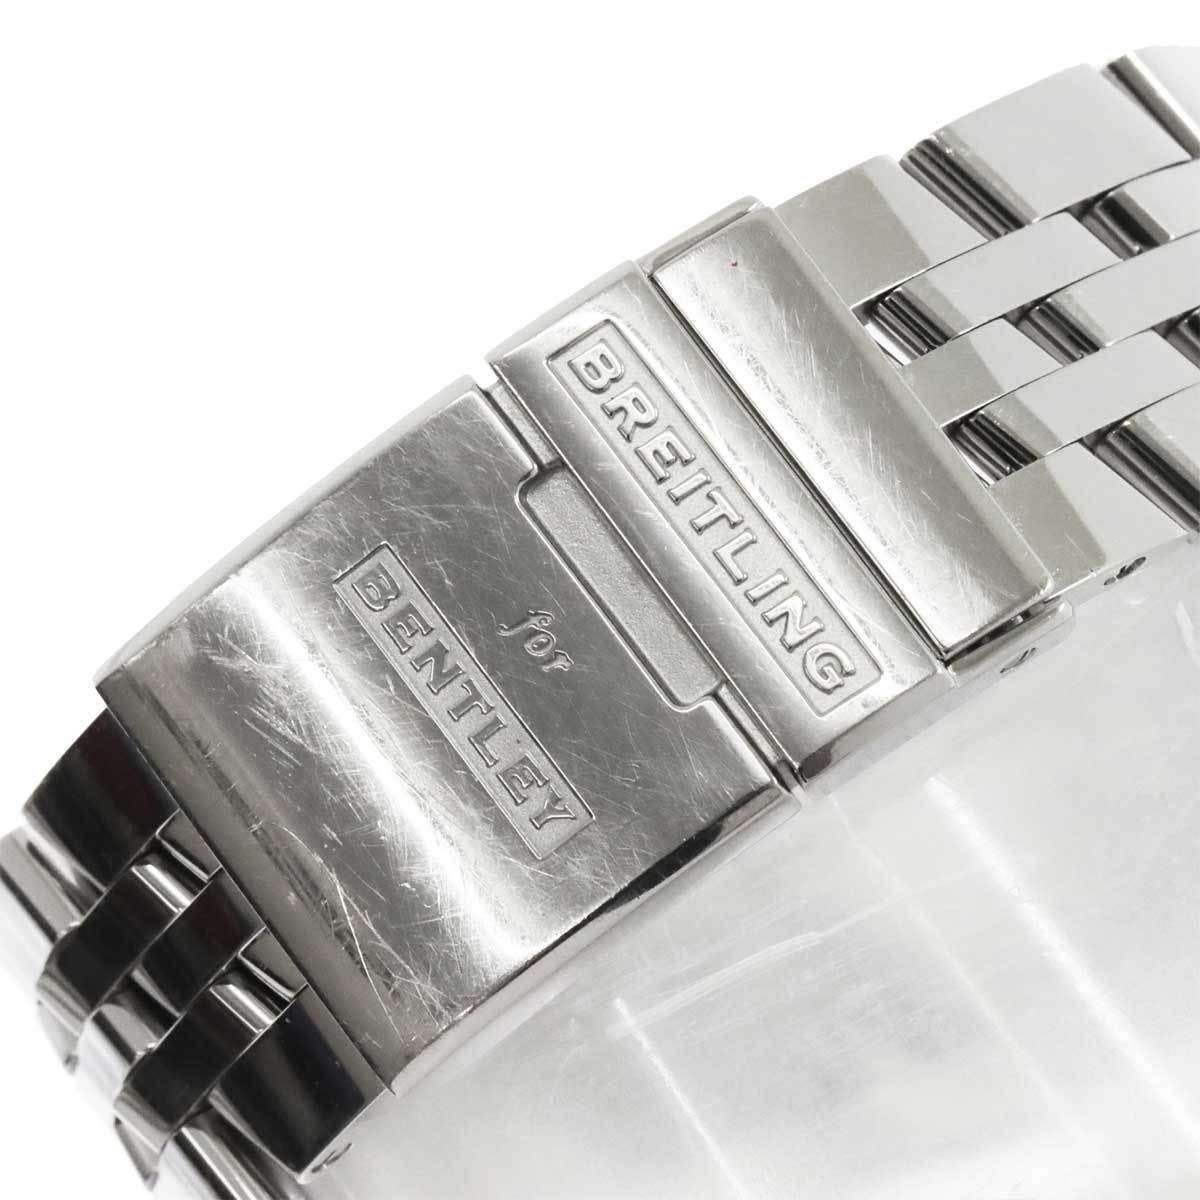  Breitling BREITLING Bentley хронограф AB0612 мужские наручные часы Date серебряный циферблат самозаводящиеся часы Bentley 90206321